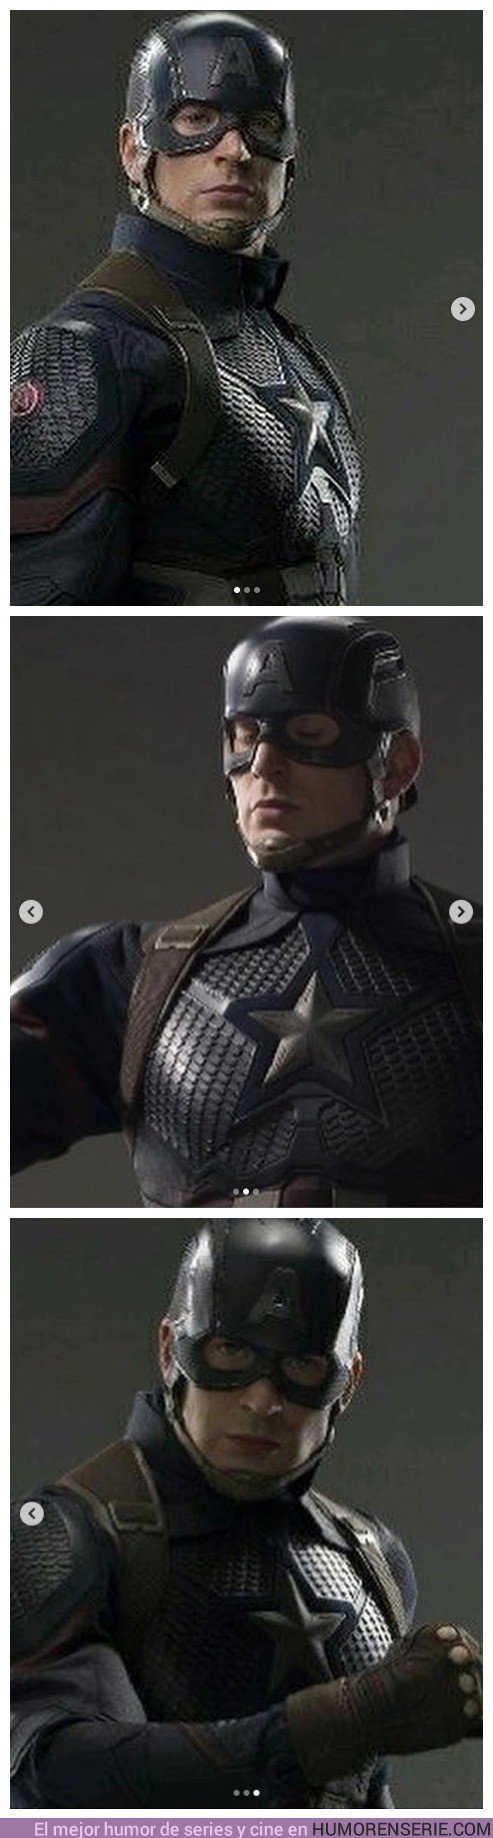 29123 - Se filtran unas imágenes de la armadura de Capitán América en 'Avengers 4'